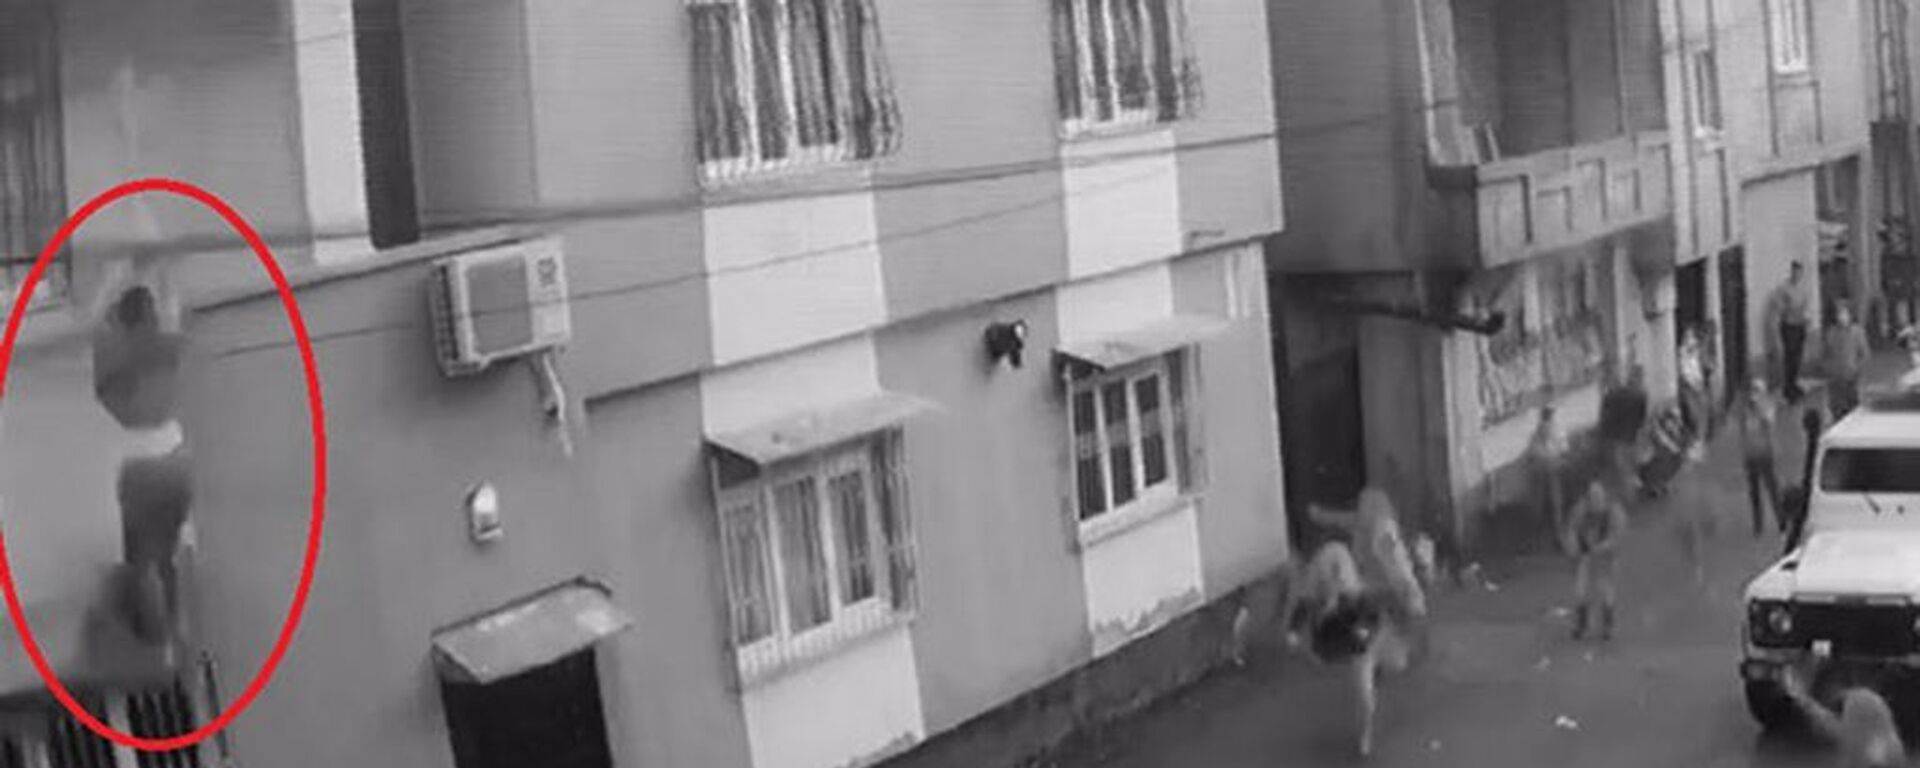 Odaya kilitlenip darbedildiği öne sürülen kadın balkondan aşağı düştü - Sputnik Türkiye, 1920, 19.02.2021